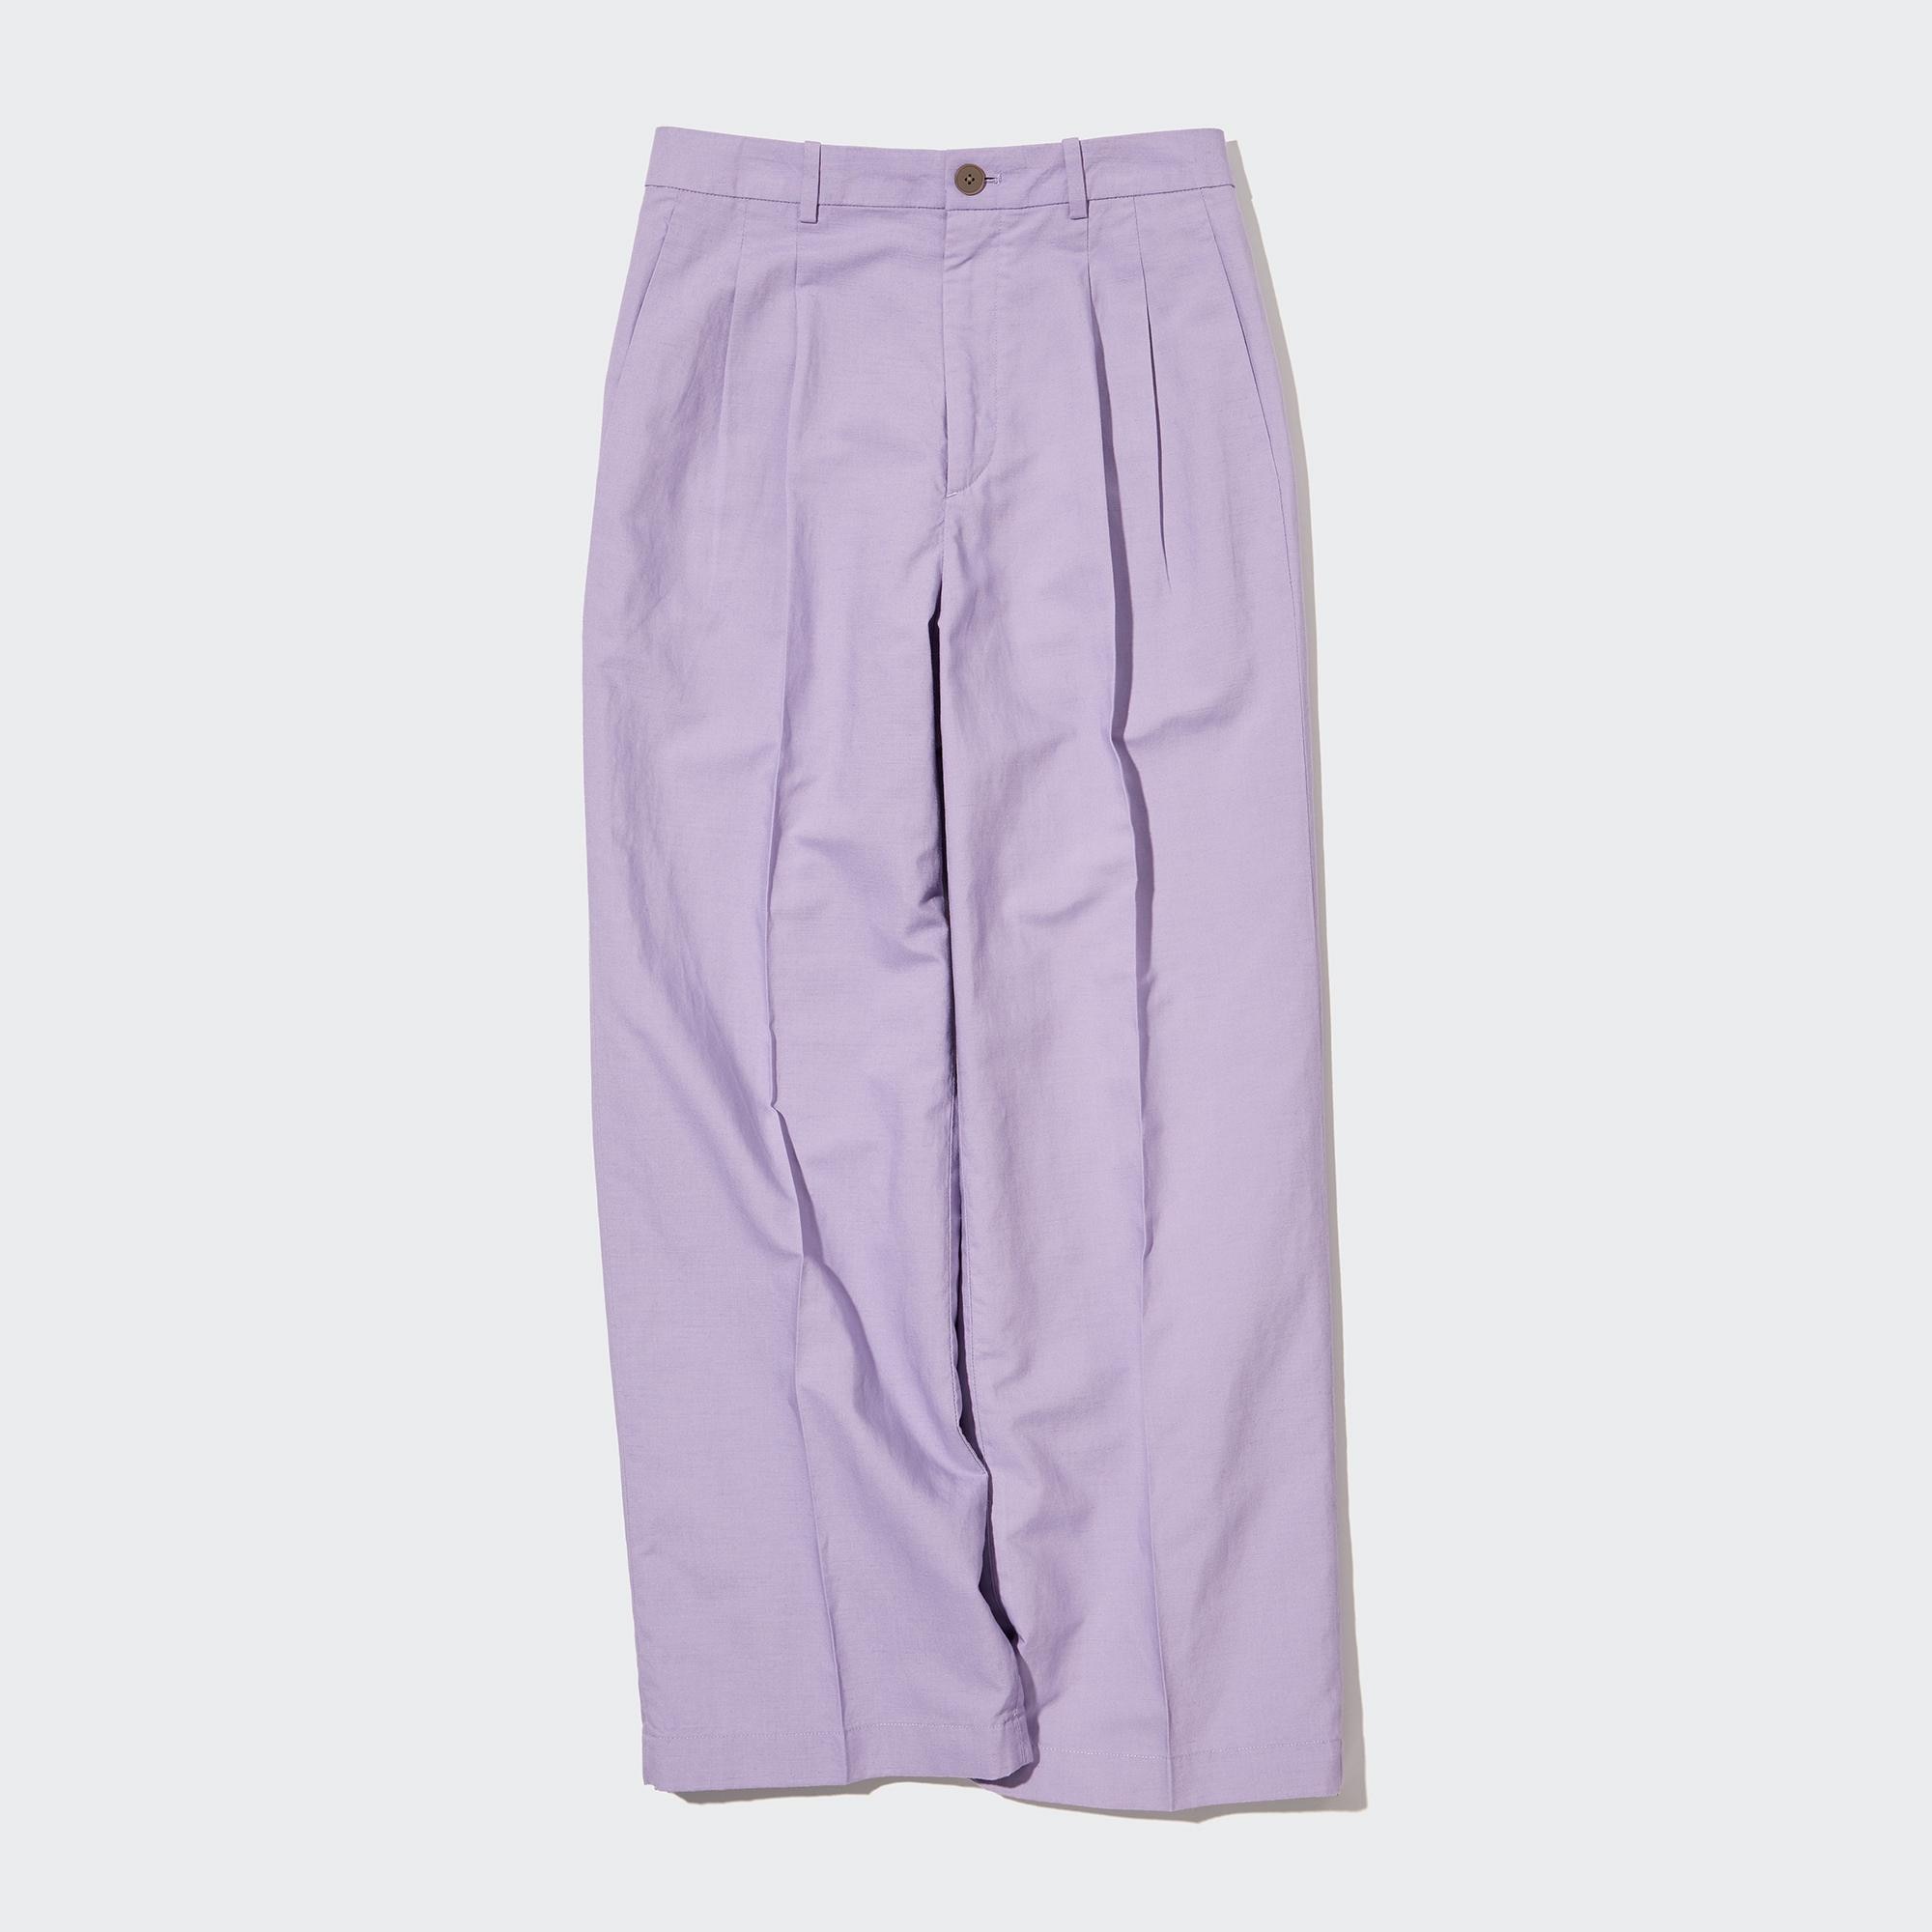 Best Deal for RUIRUILICO Wide Leg Pants for Women Linen Flowy